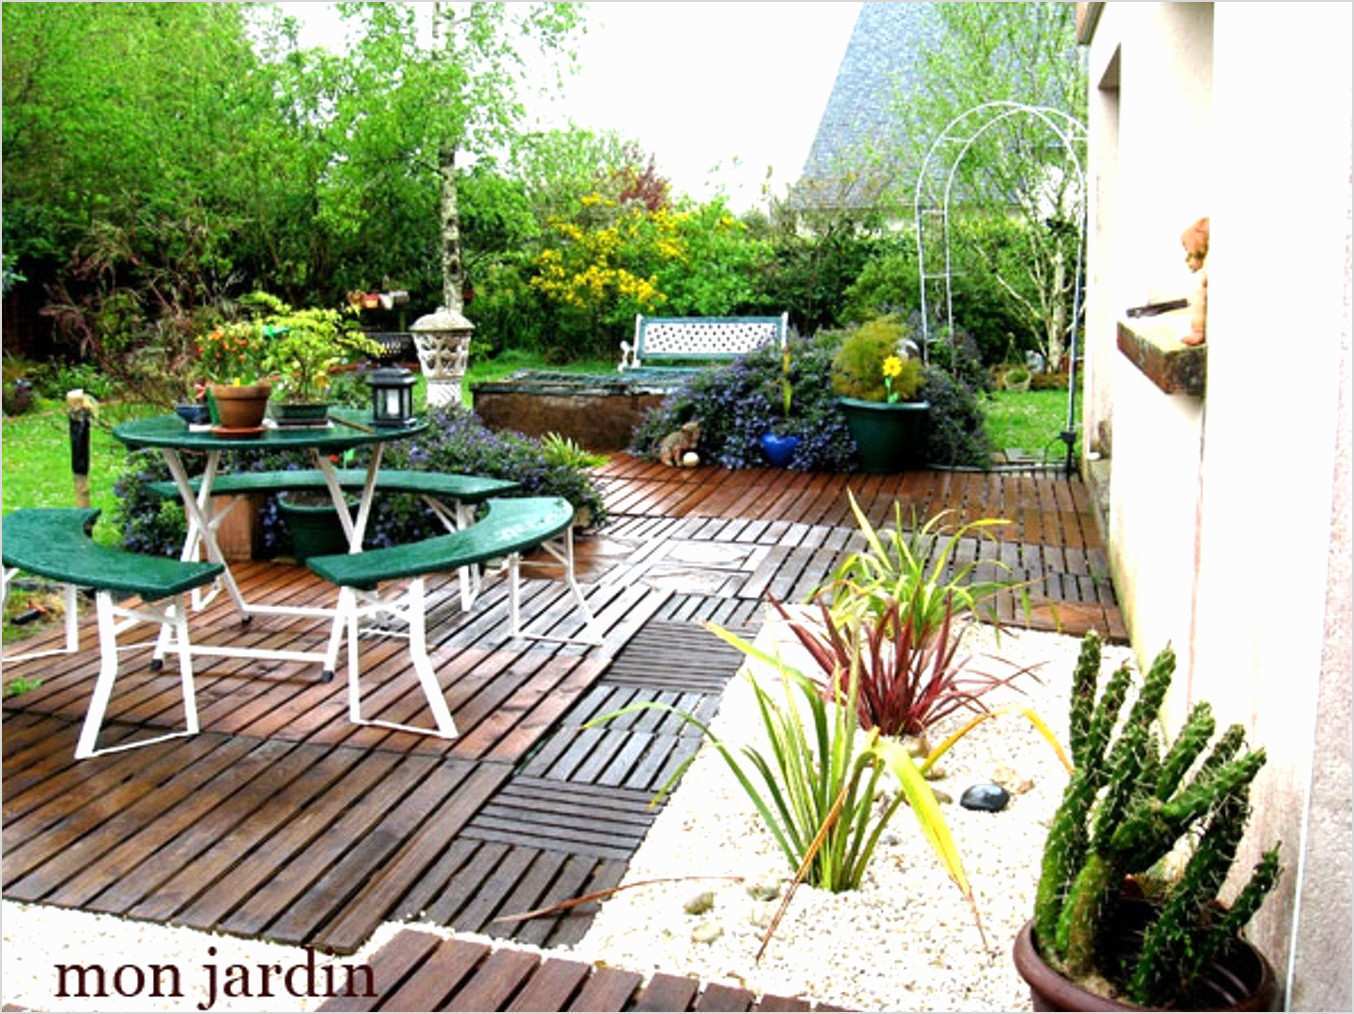 decoration jardin terrasse elegant exterieur pas cher et amenagement exterieur terrasse of decoration jardin terrasse